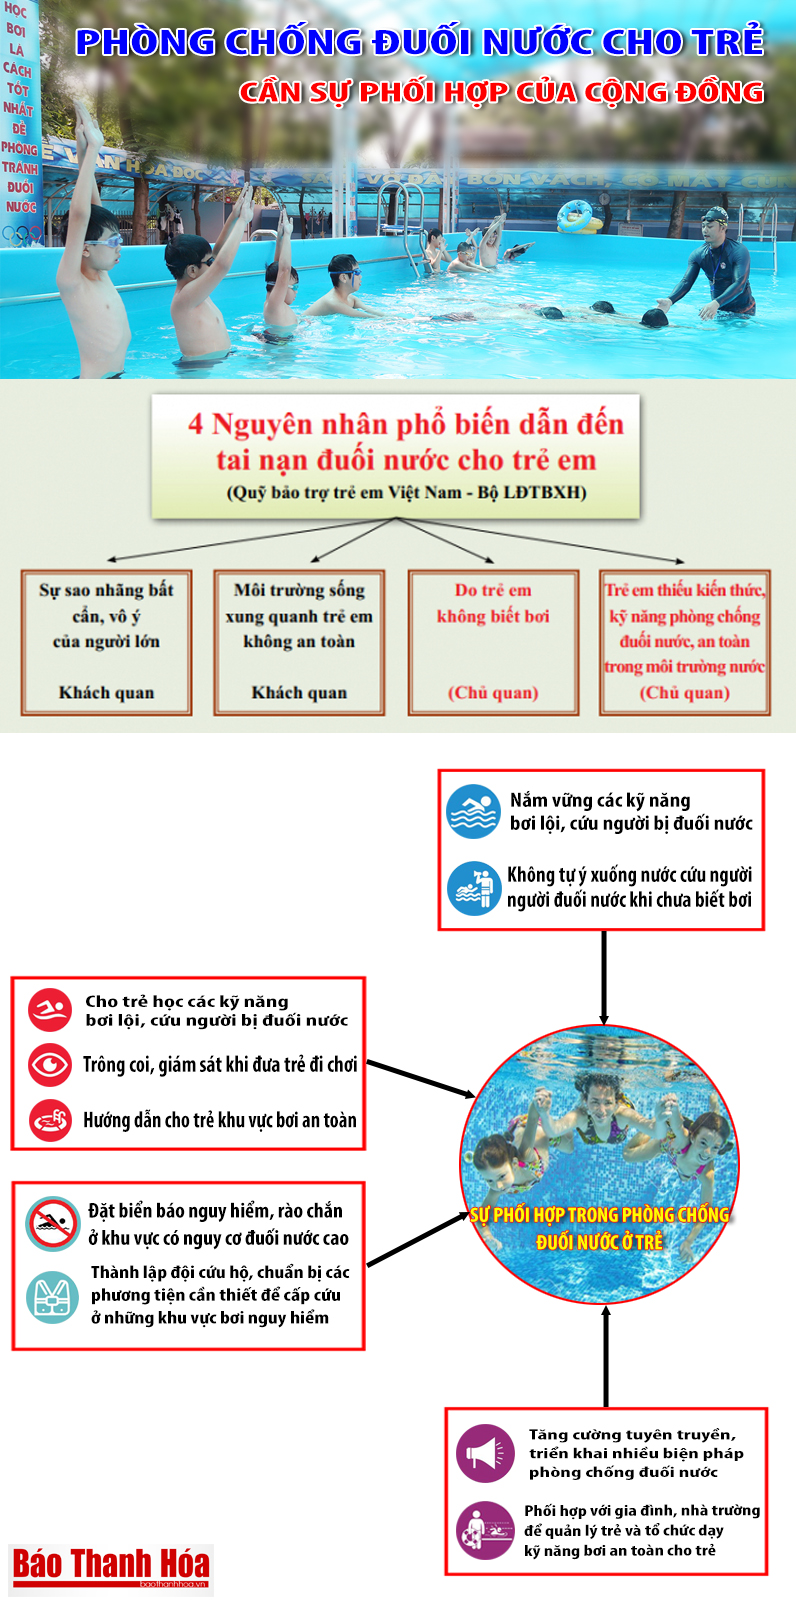 [Infographic] - Phòng chống đuối nước cho trẻ em: Cần sự phối hợp của cả cộng đồng